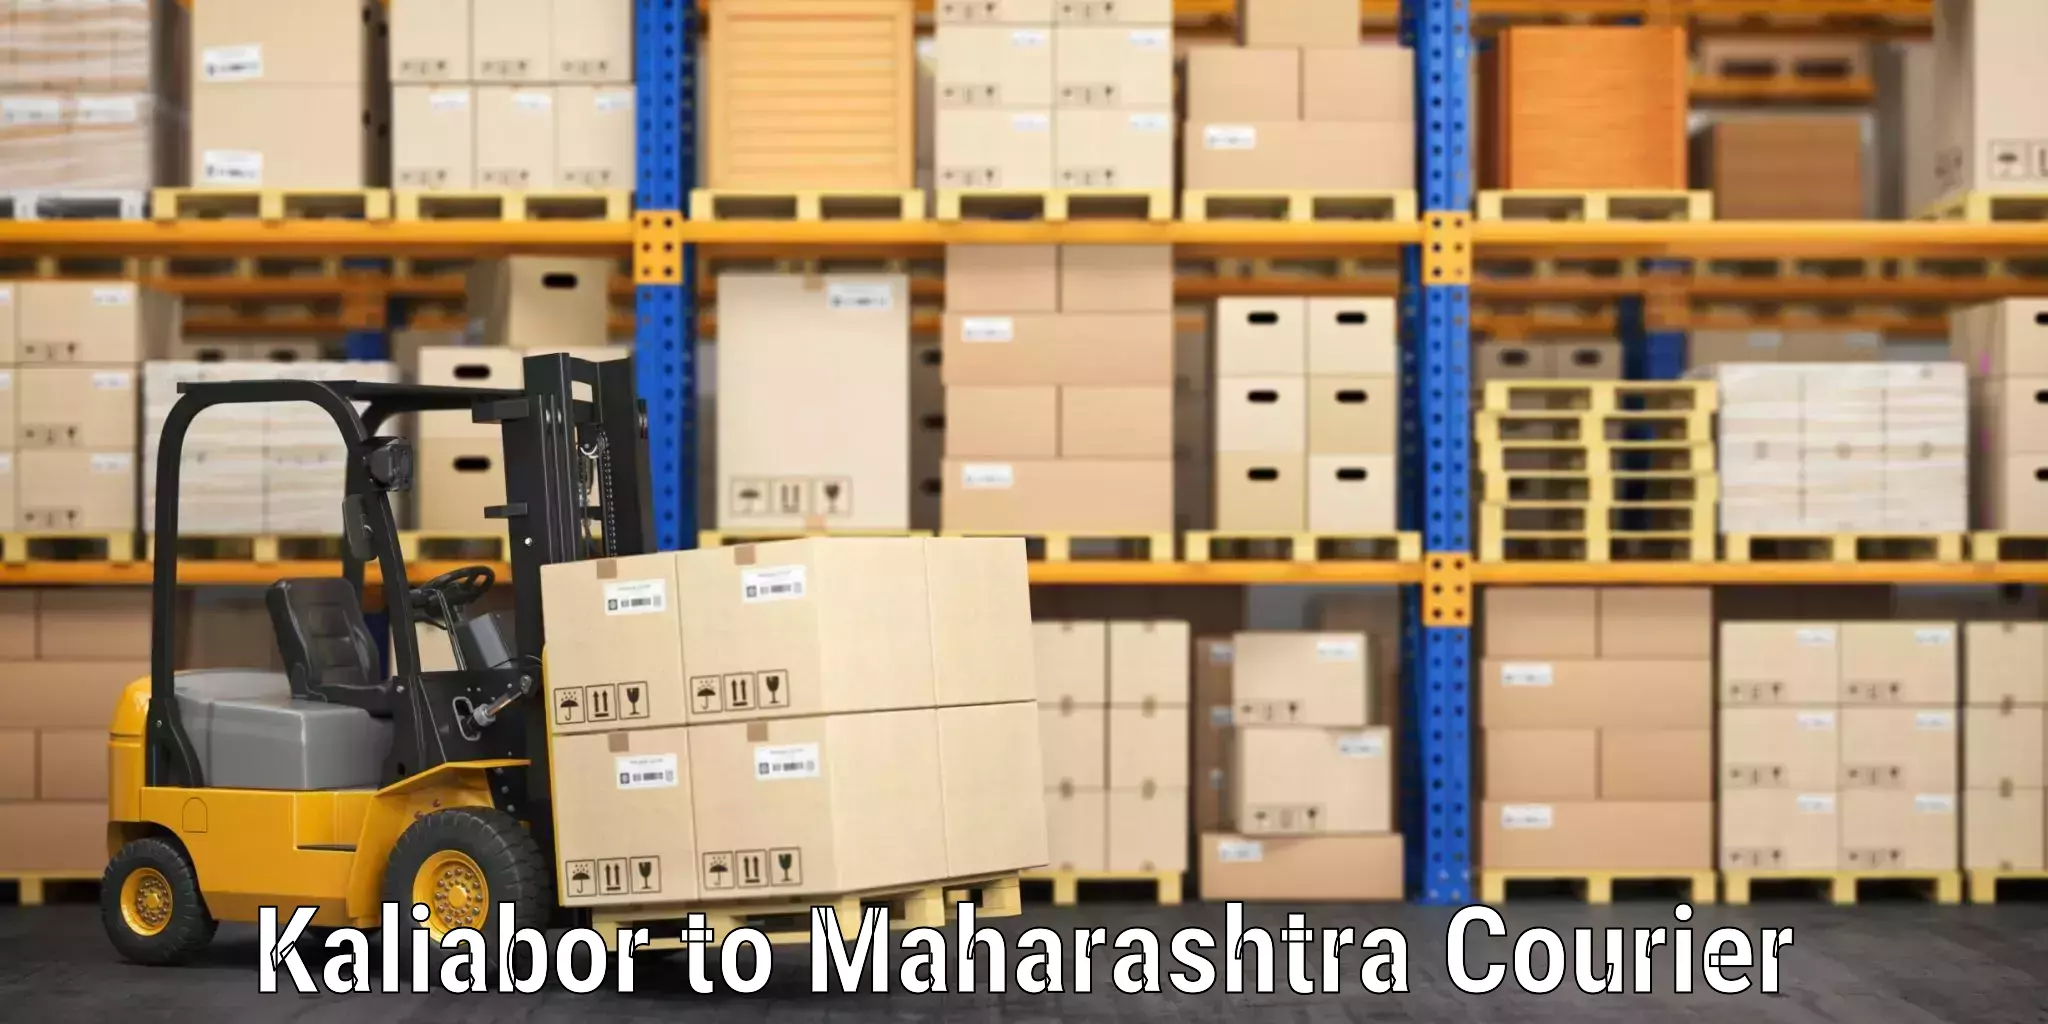 Baggage shipping rates calculator Kaliabor to Maharashtra